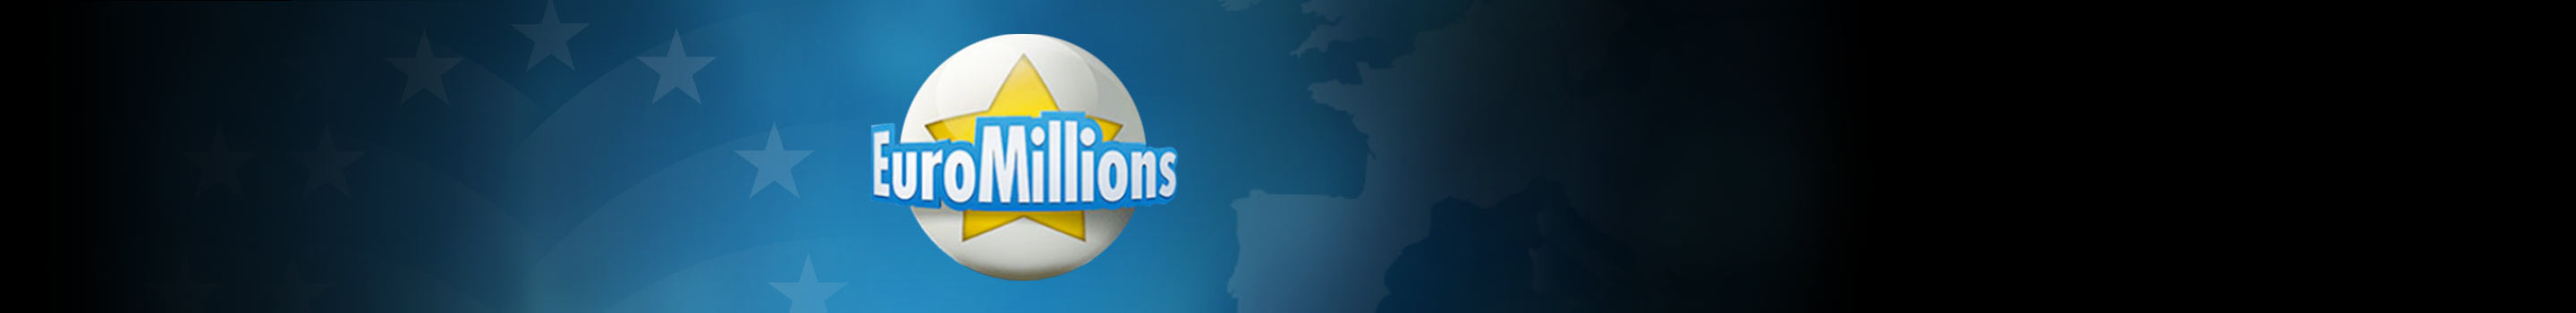 EuroMillions – največja evropska loterija